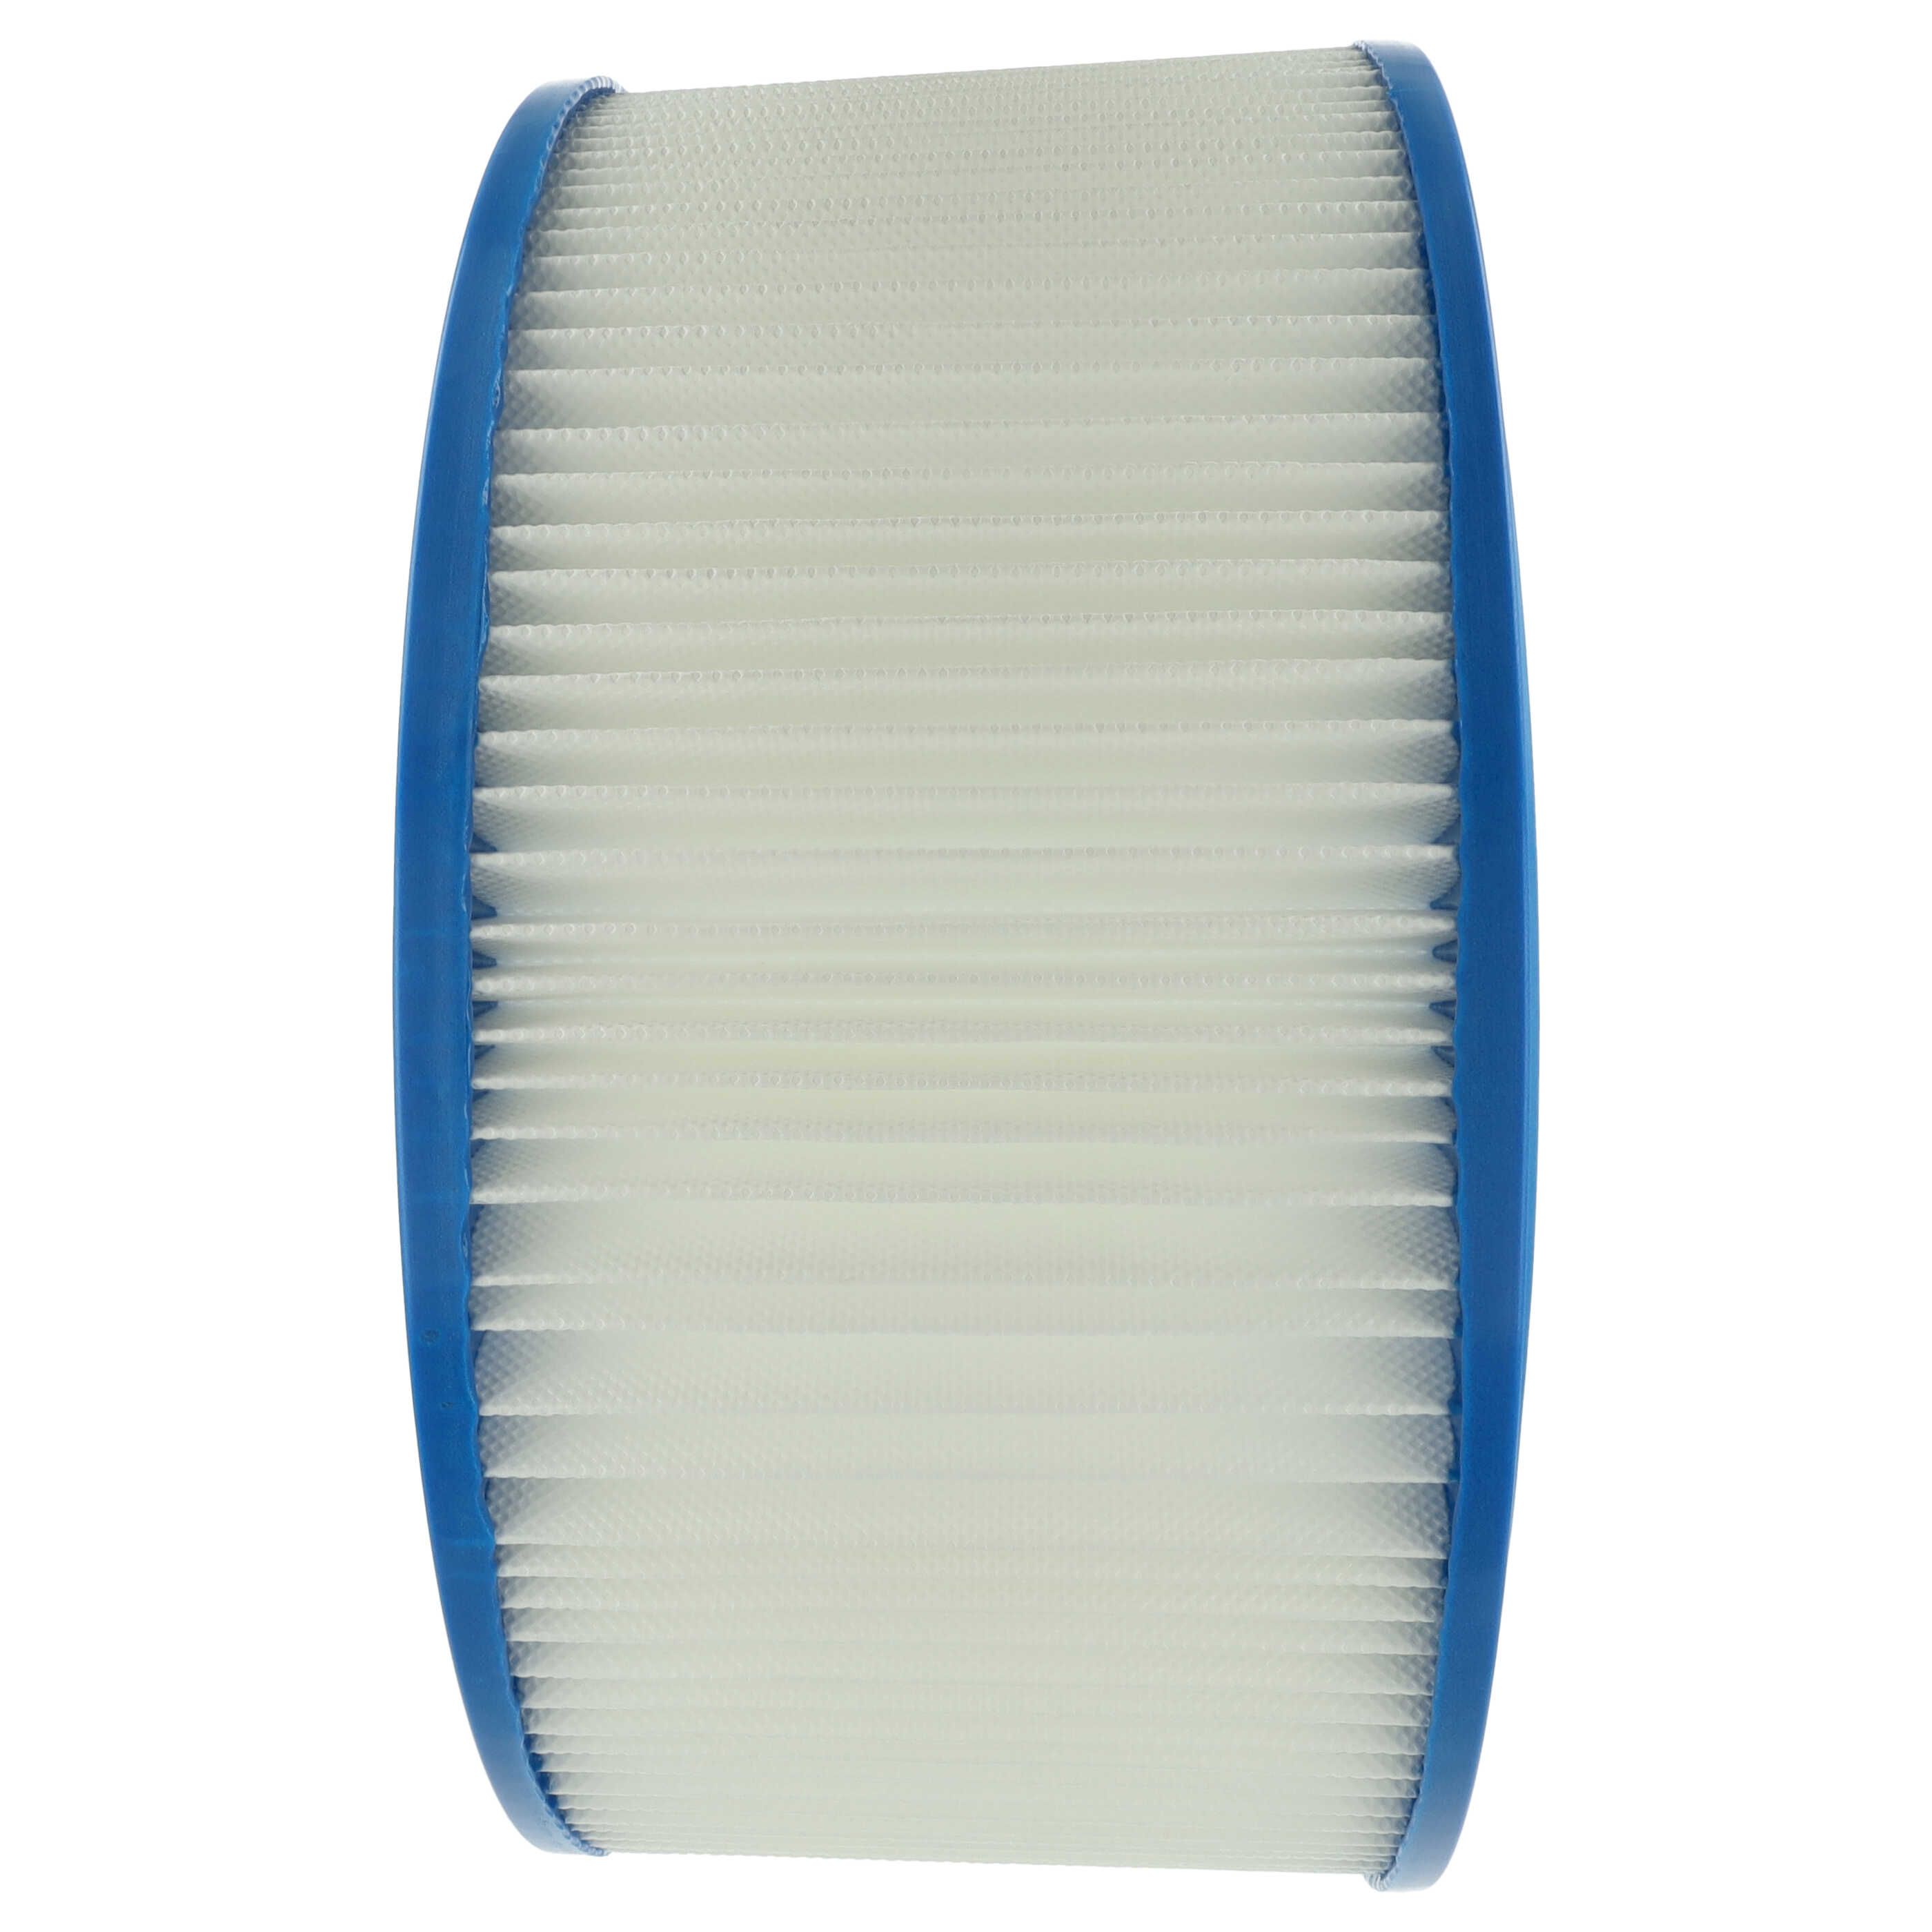 Filtro sostituisce Hilti 371145 per aspirapolvere - filtro cartucce